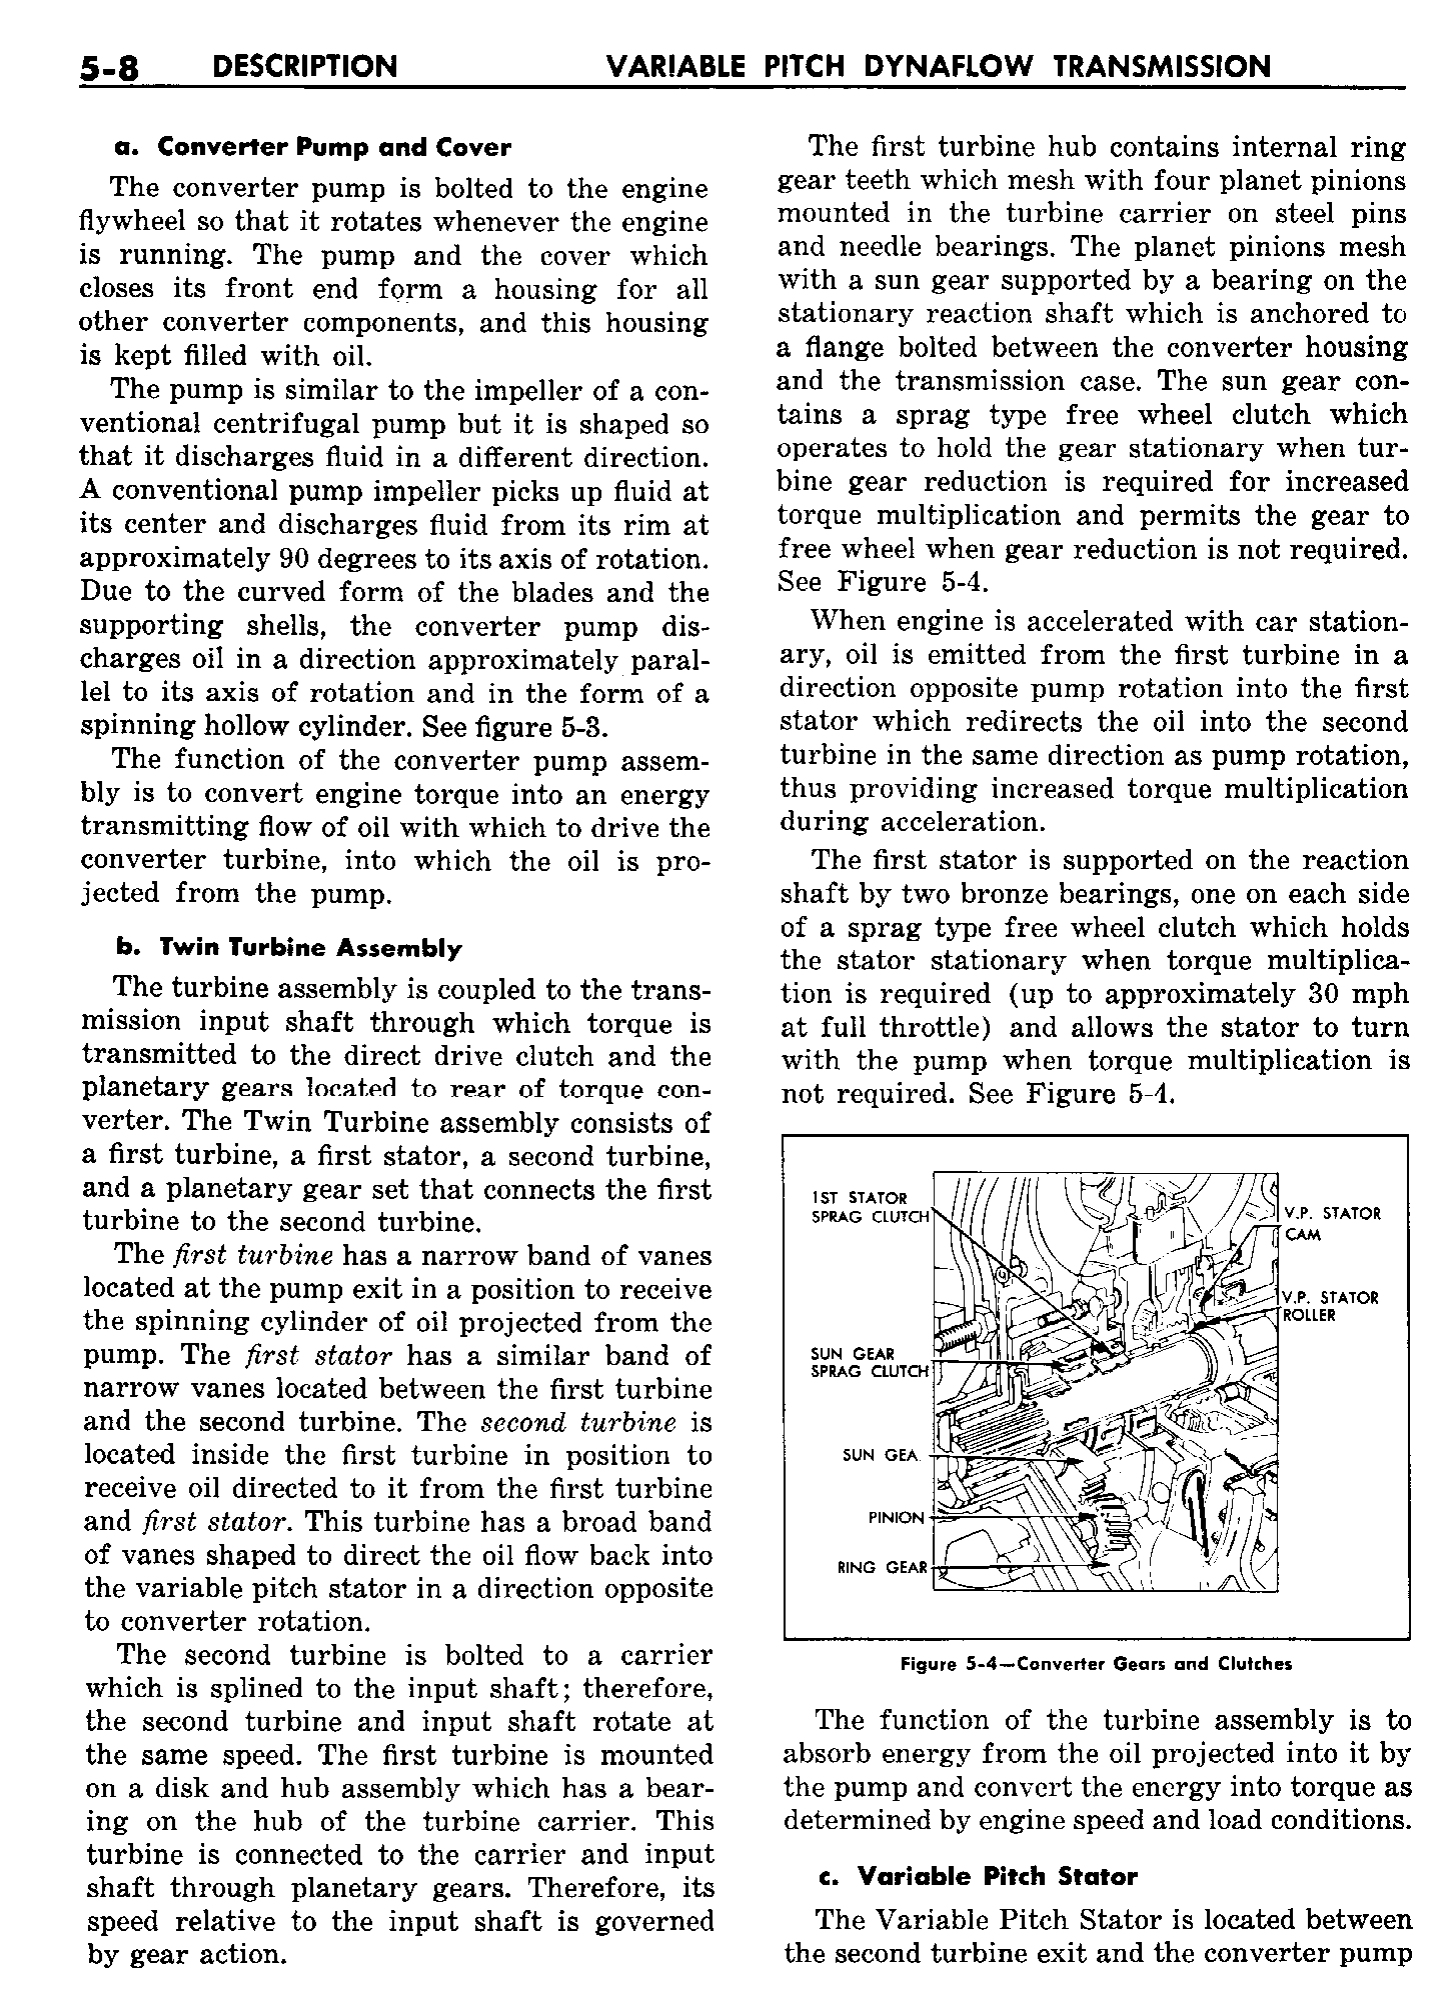 n_06 1958 Buick Shop Manual - Dynaflow_8.jpg